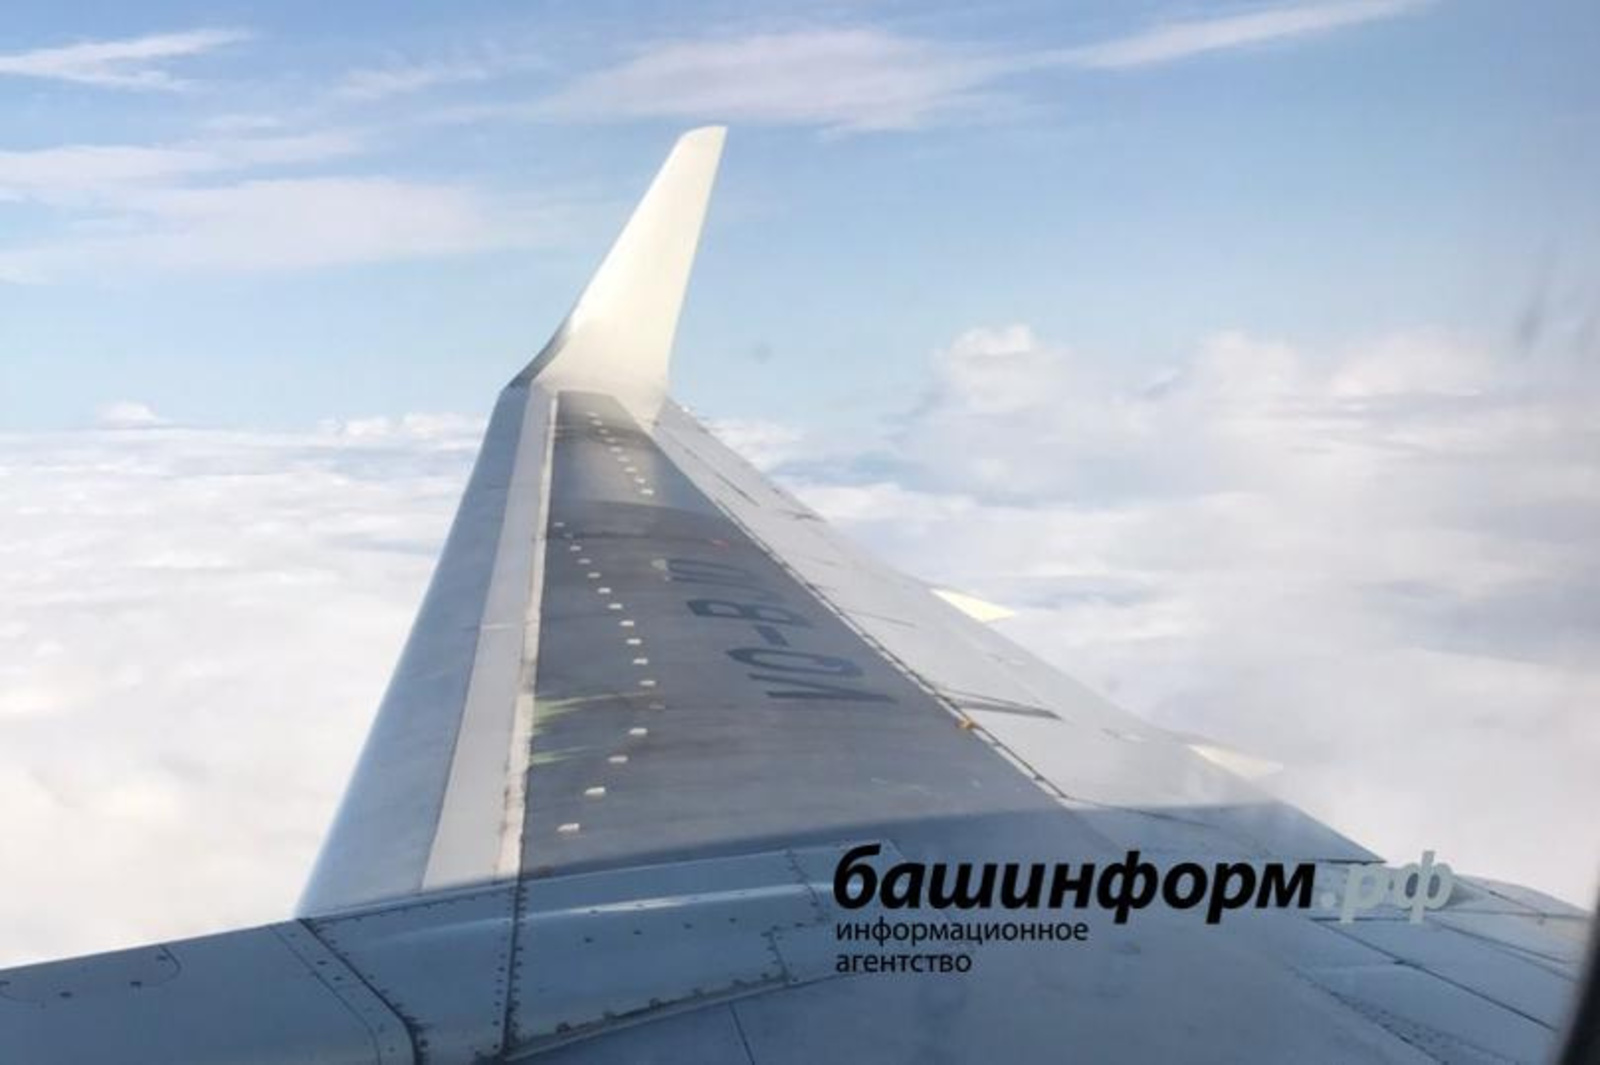 Чартерные рейсы Уфа – Нур-Султан планируется запустить к 2022 году